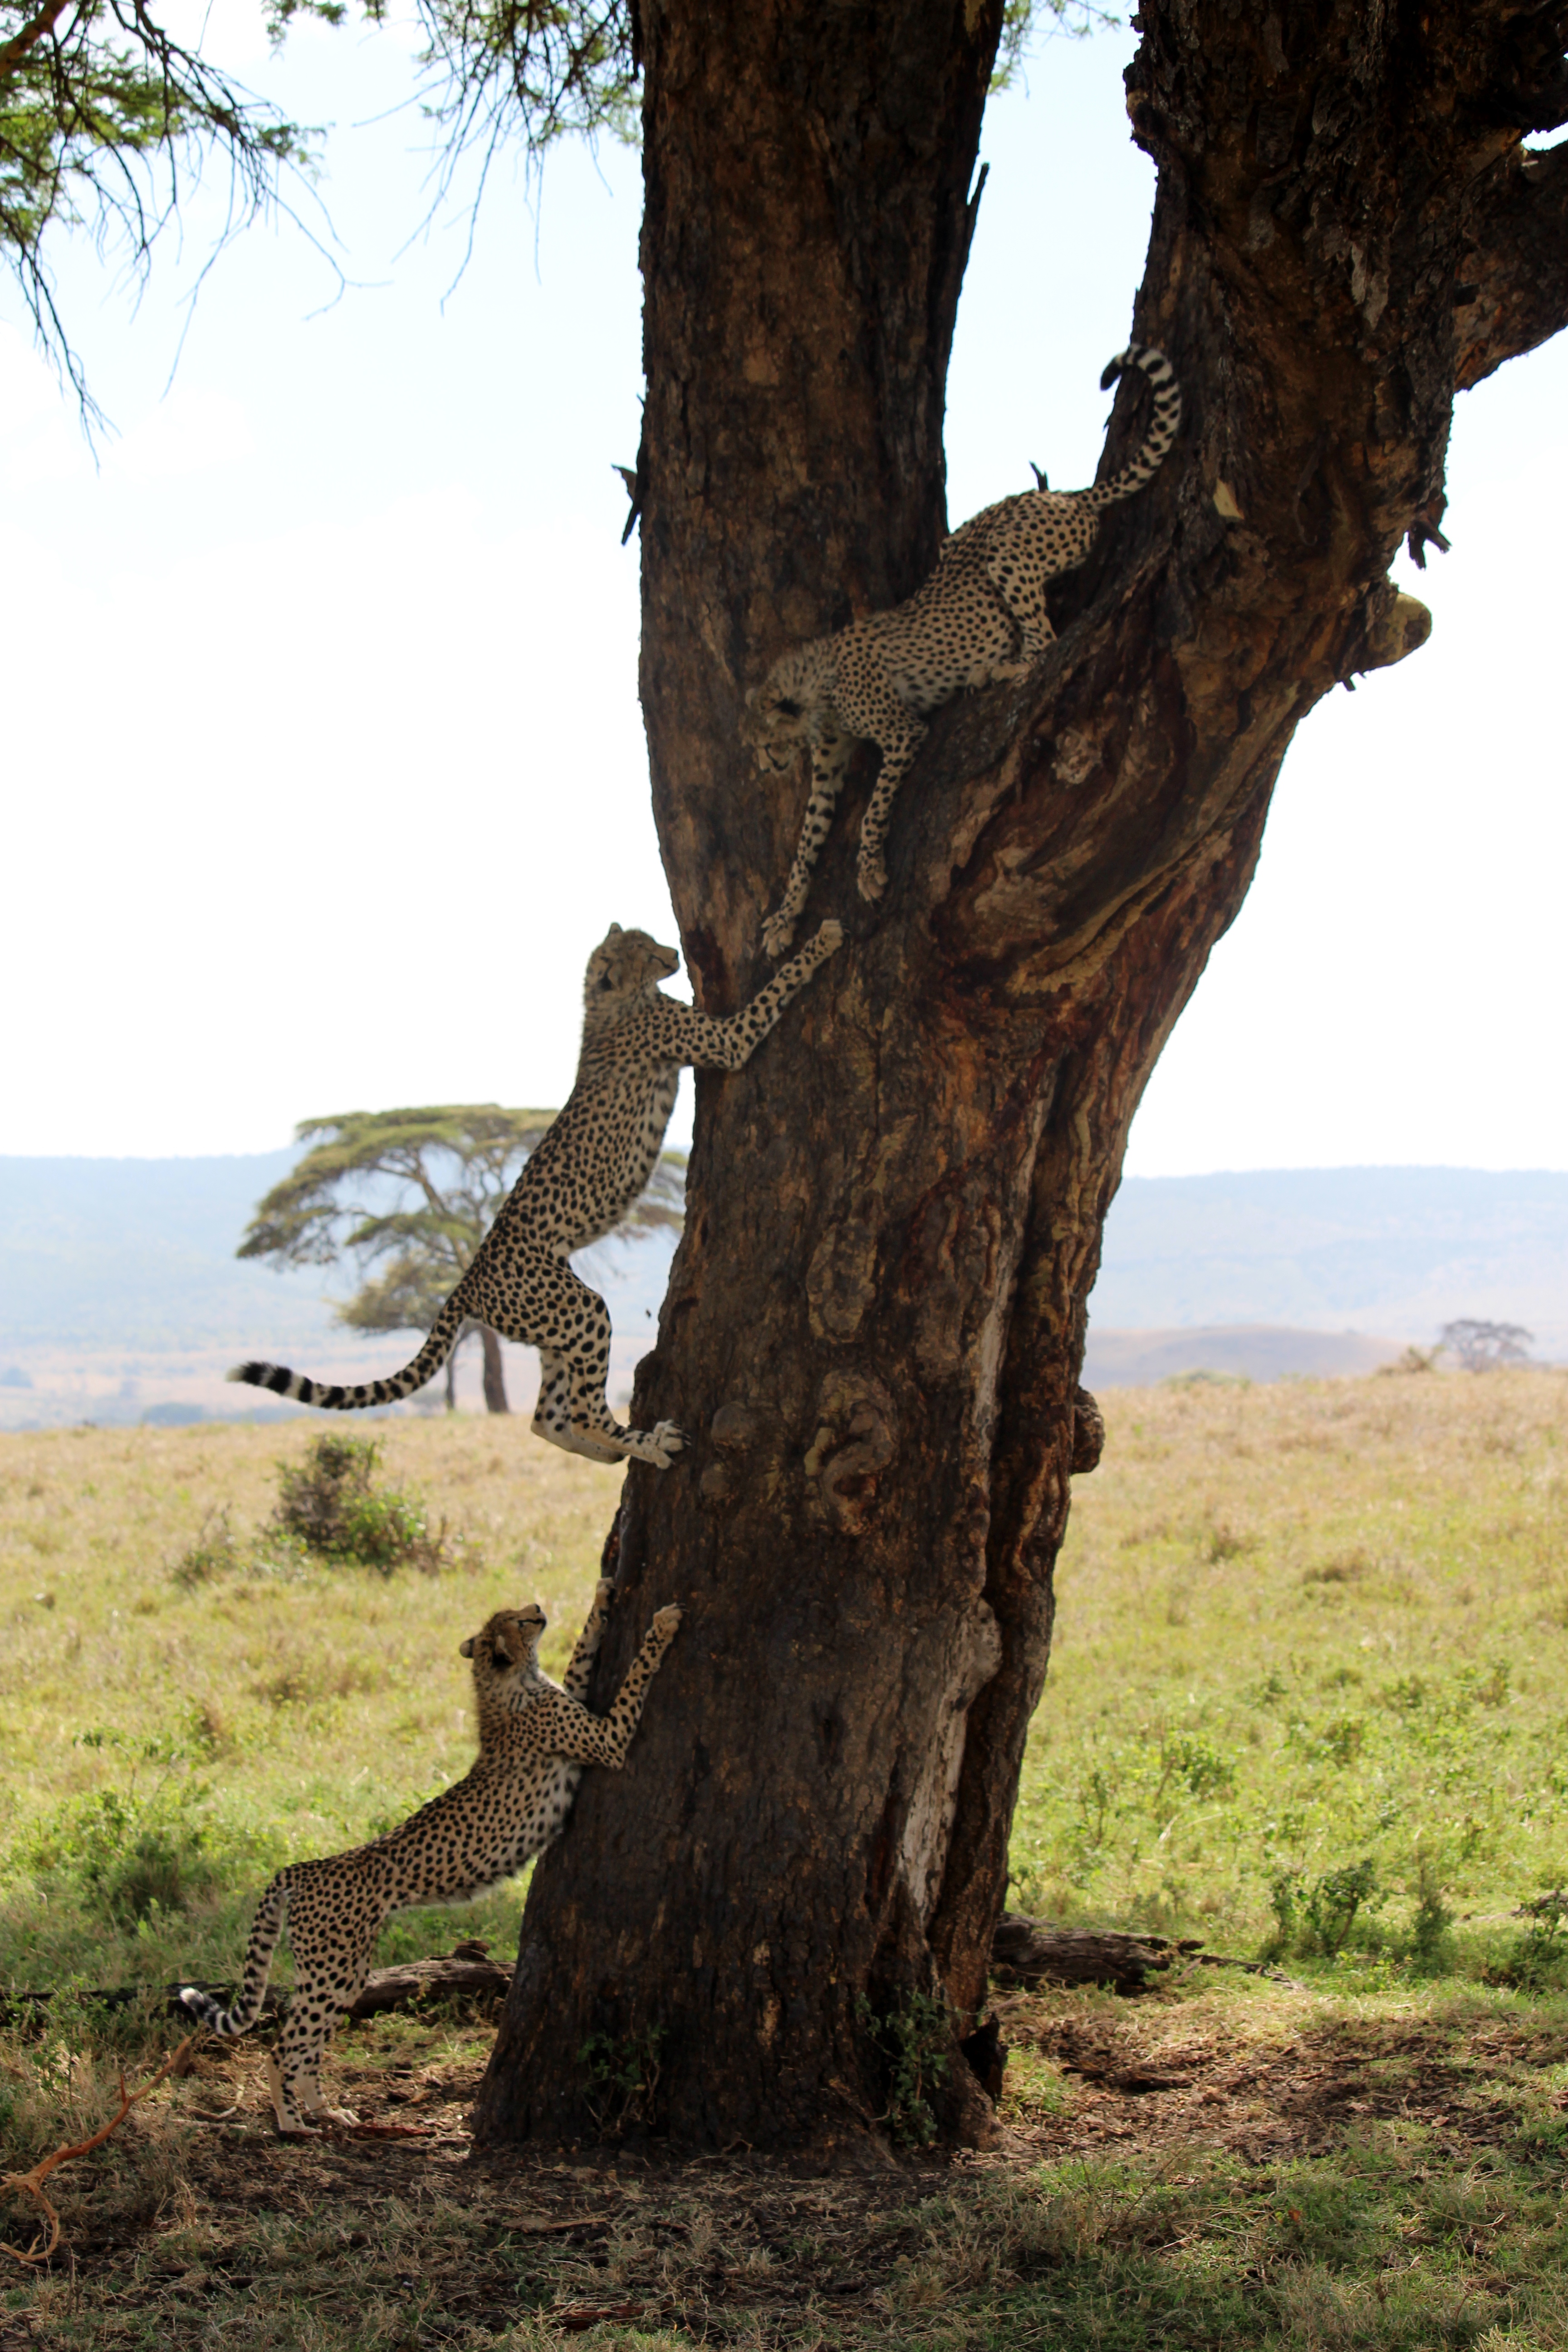 Cheetahs climbing a tree